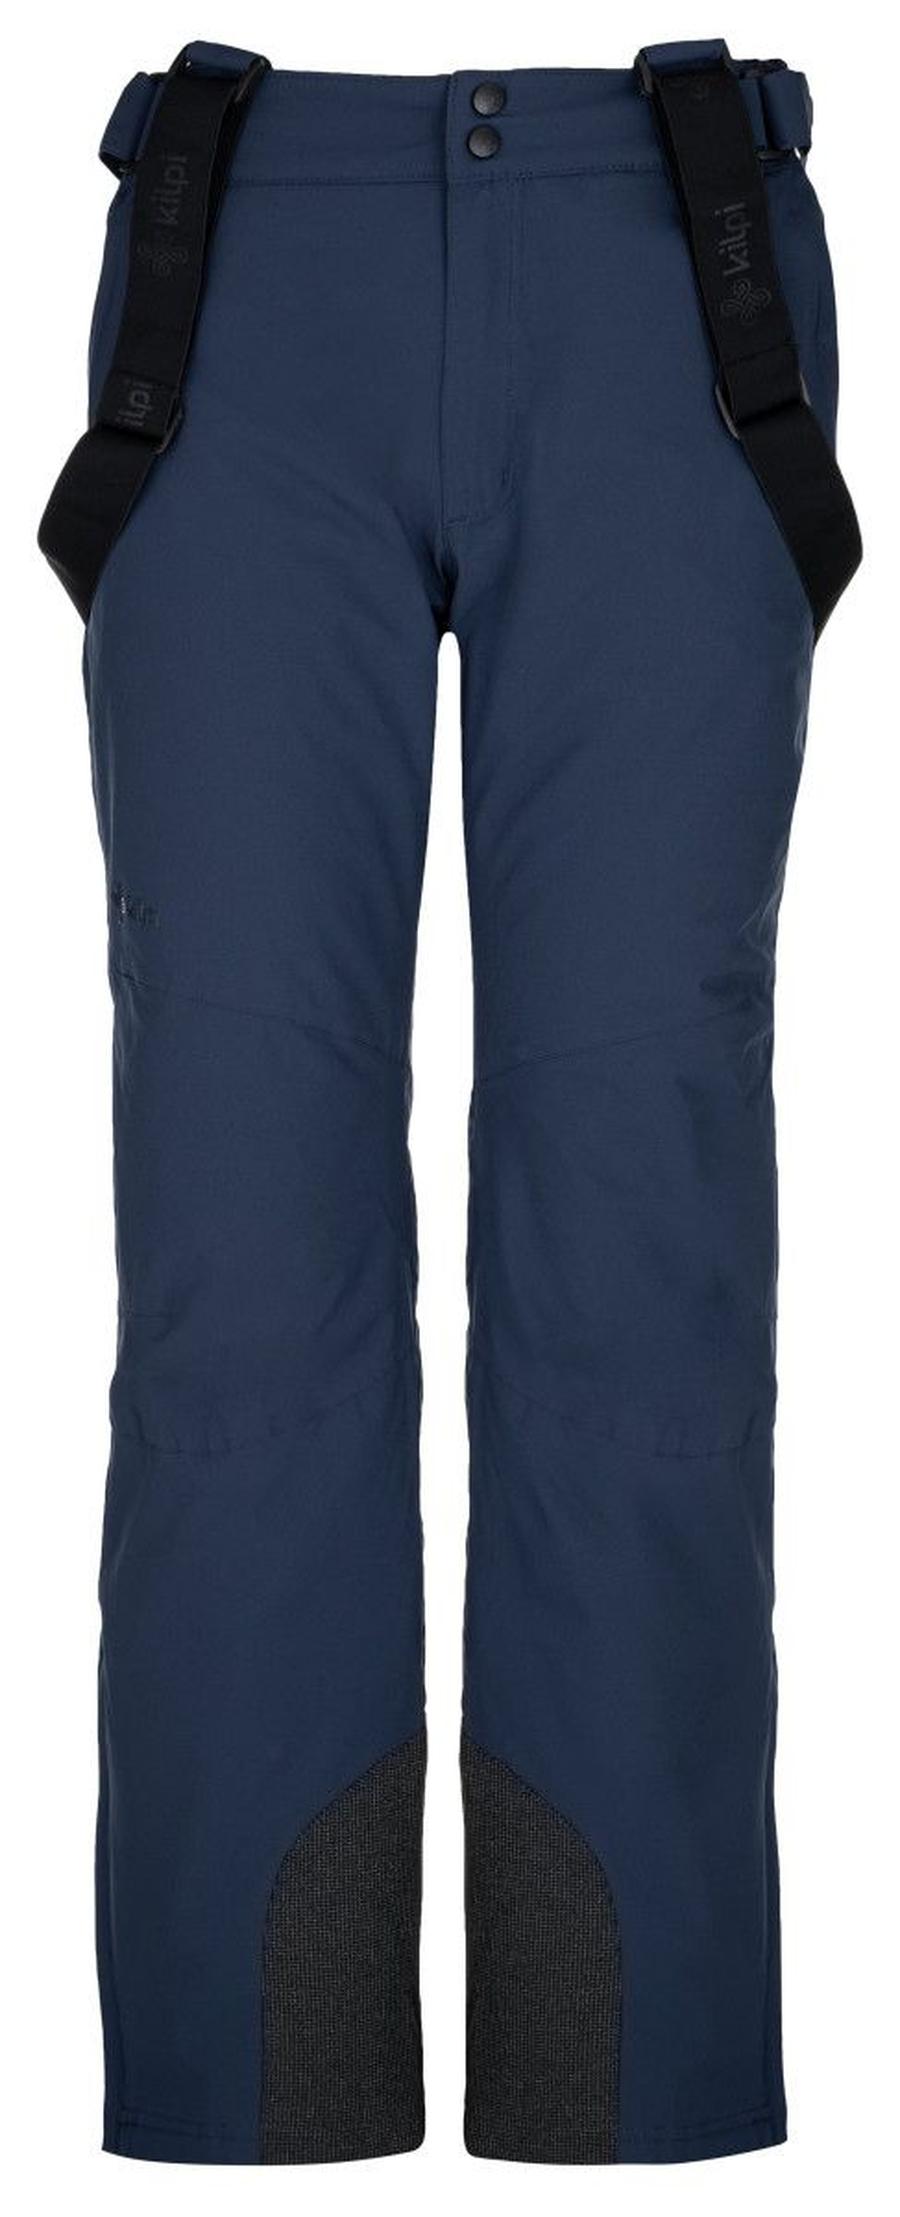 Dámské lyžařské kalhoty Kilpi ELARE-W tmavě modrá XS